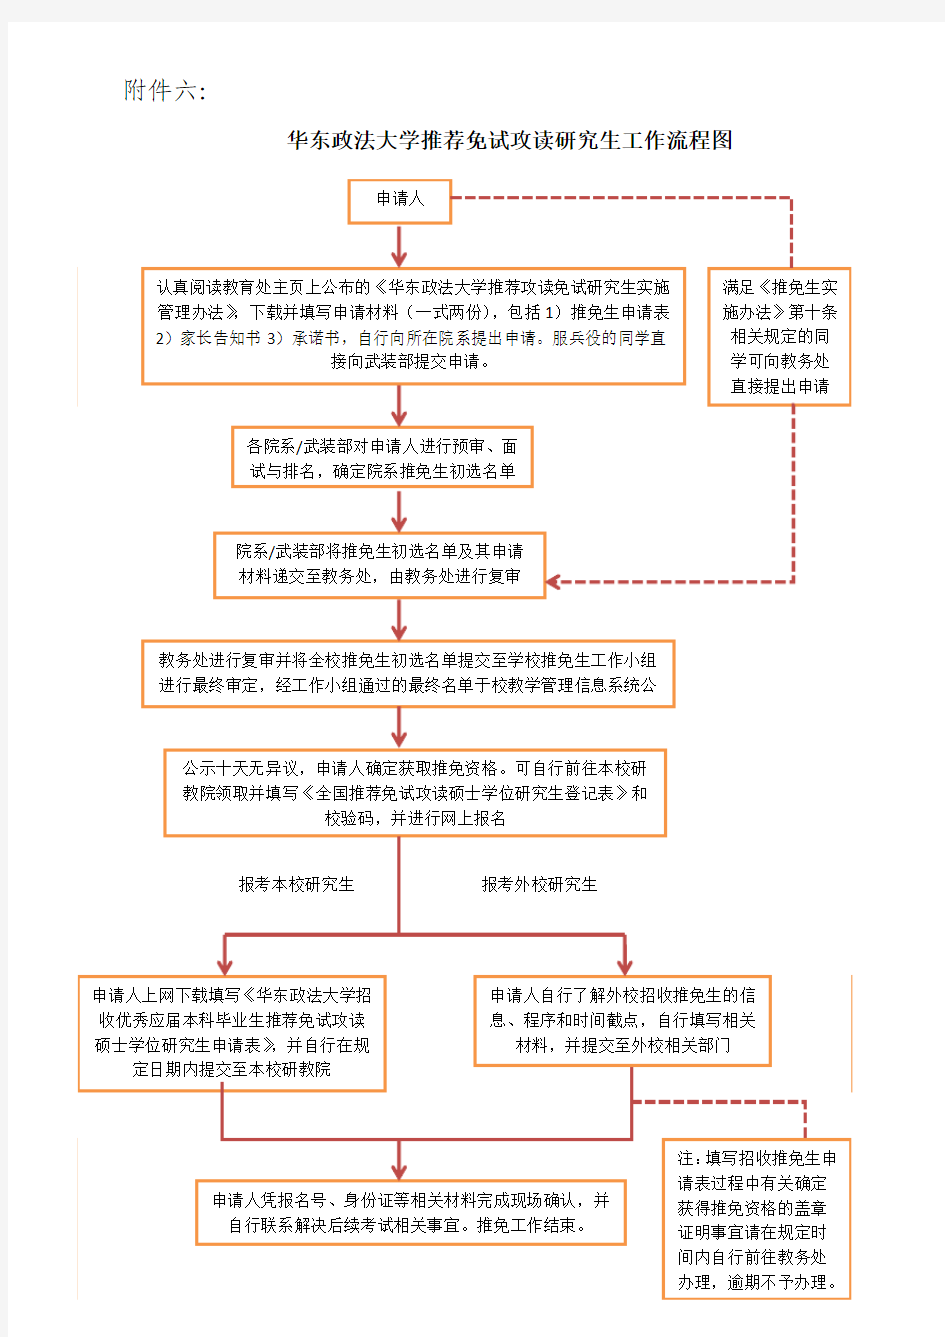 【六】华东政法大学推免生工作流程图